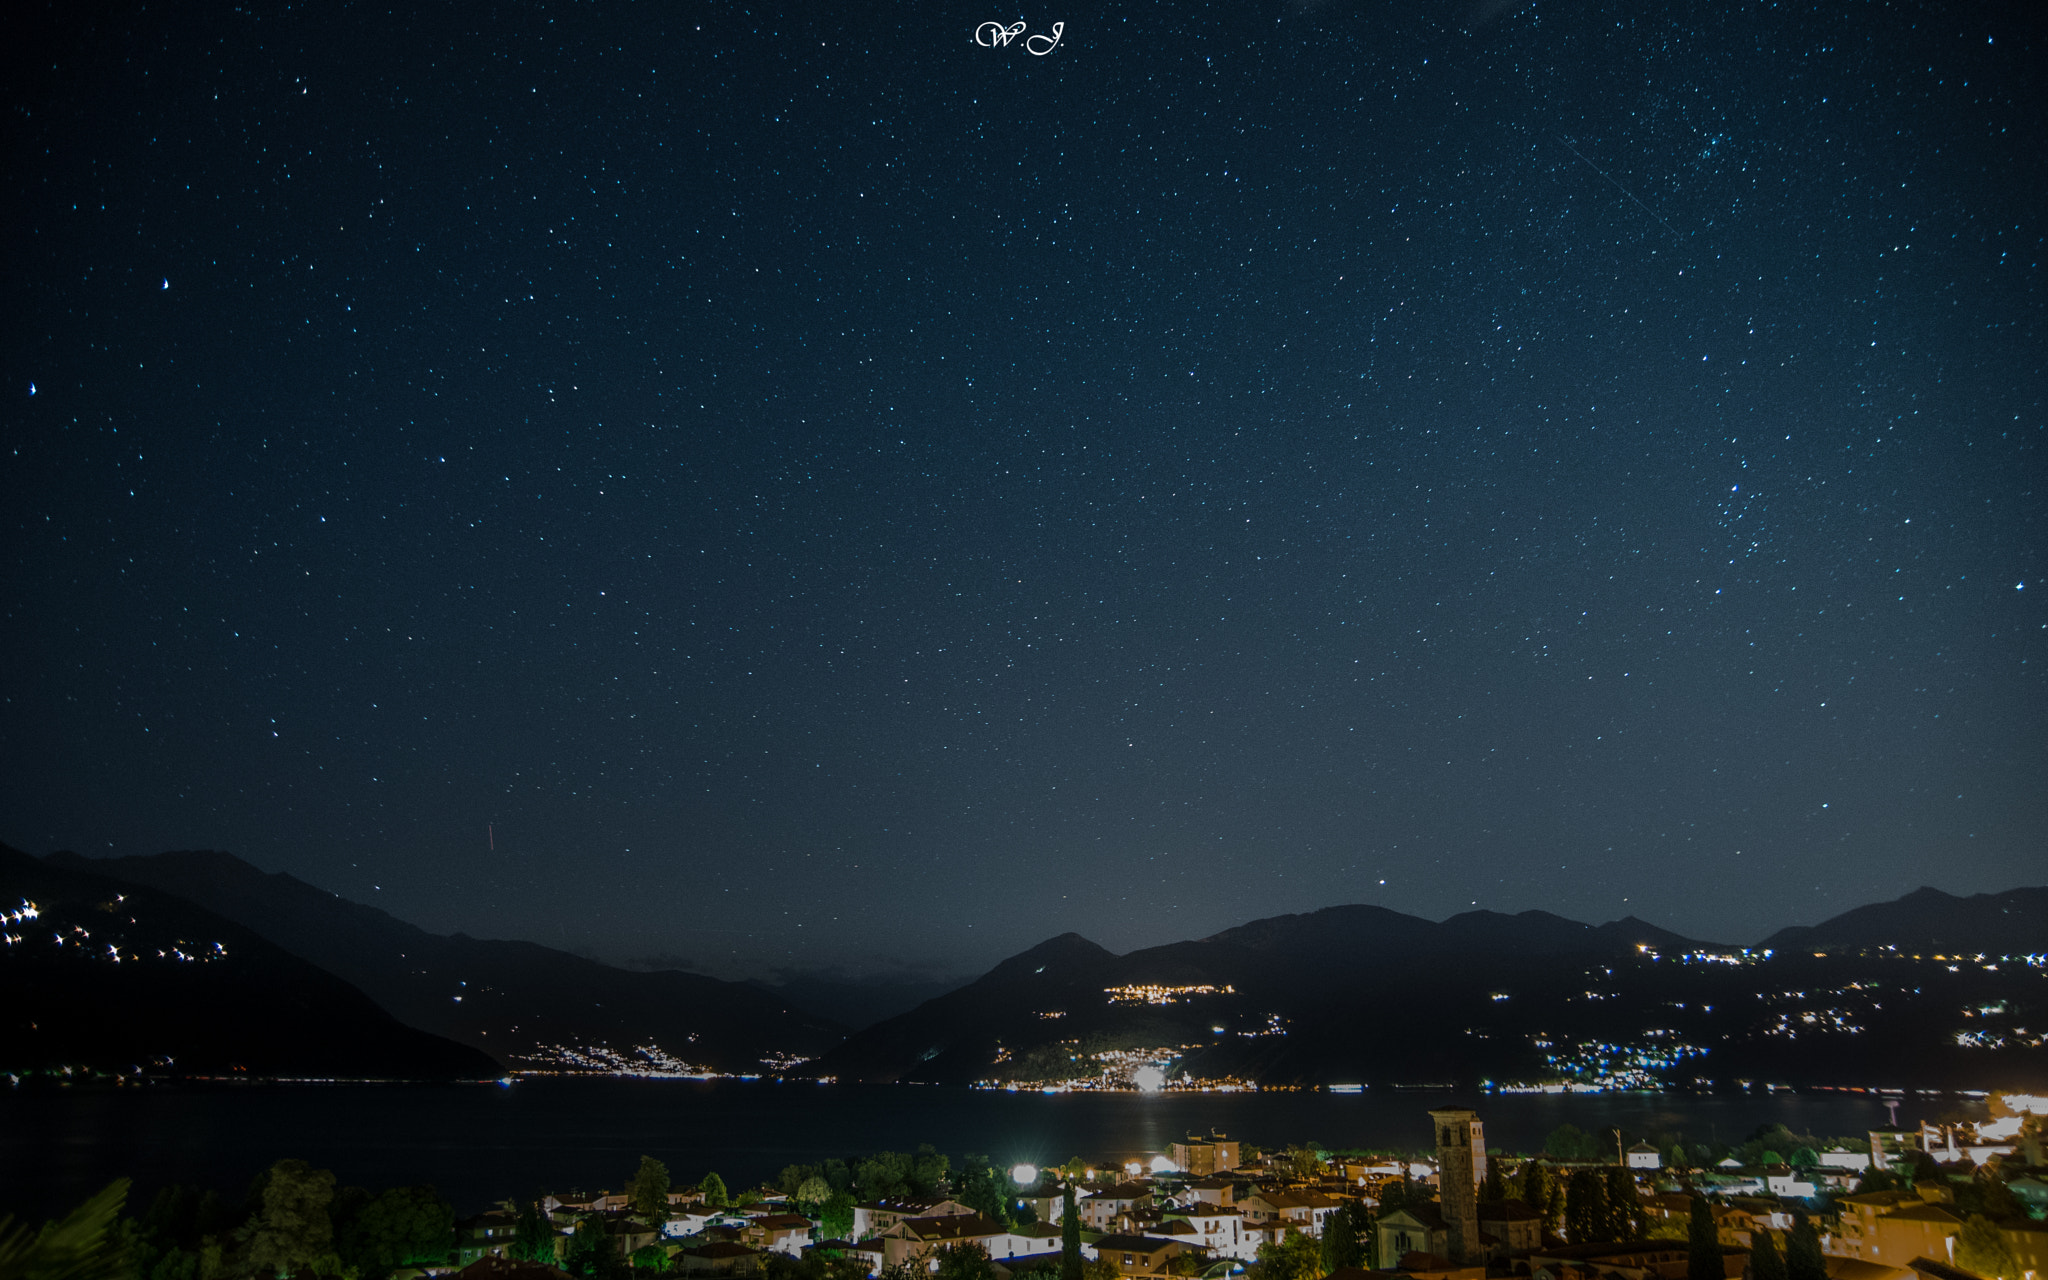 Sony ILCA-77M2 sample photo. Stars over lake maggiore photography